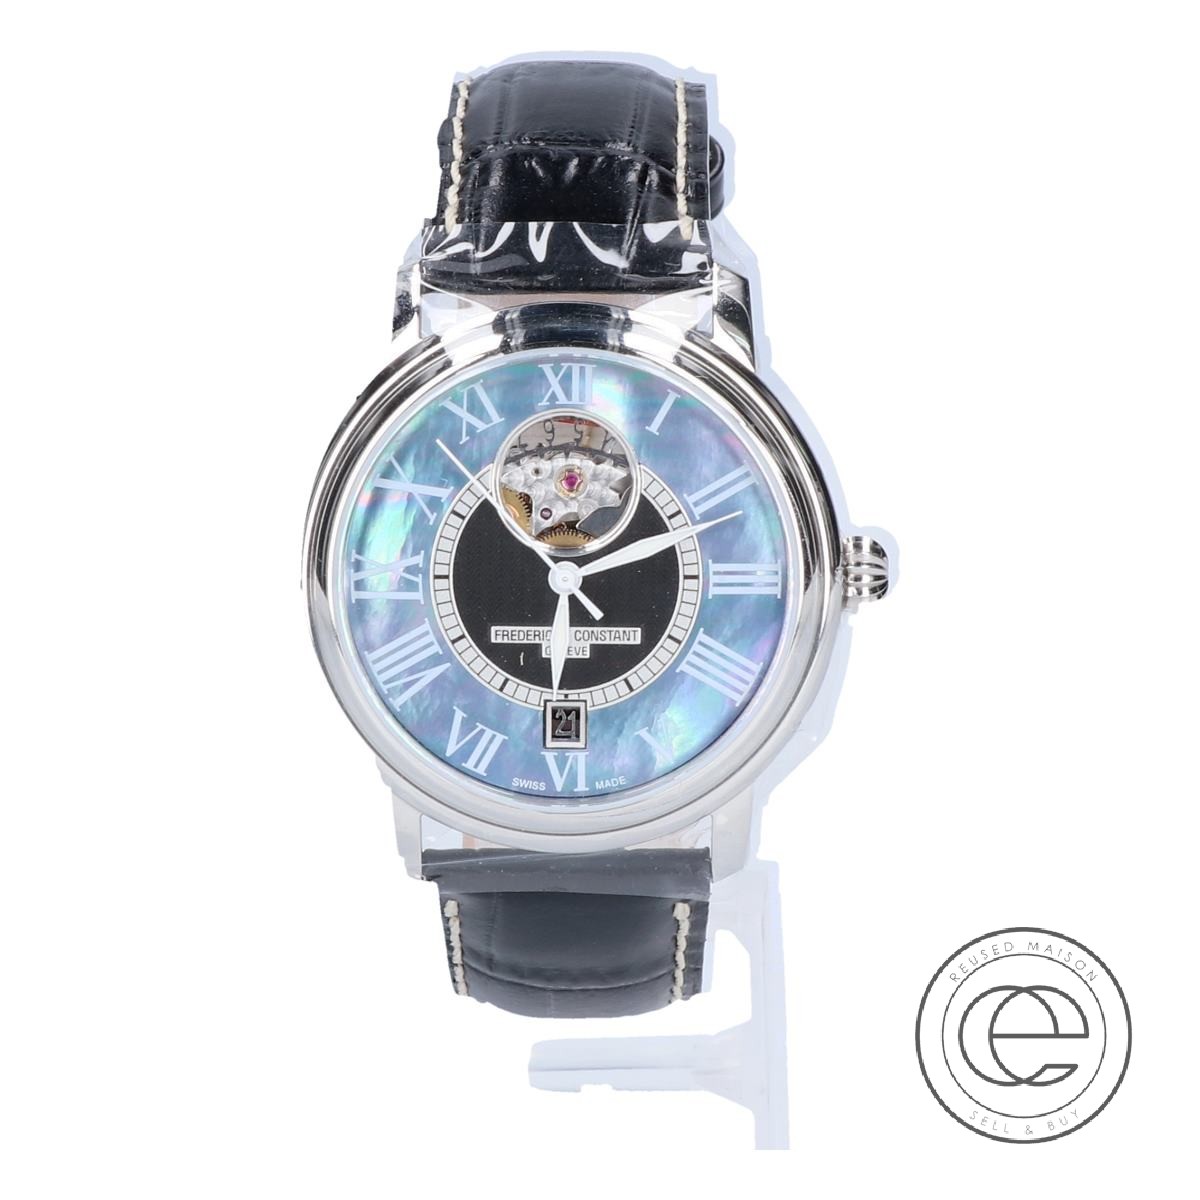 フレデリックコンスタントのFC-315MPB3P6 クラシックハートビート デイト付きラウンド リミテッド 自動巻き腕時計の買取実績です。